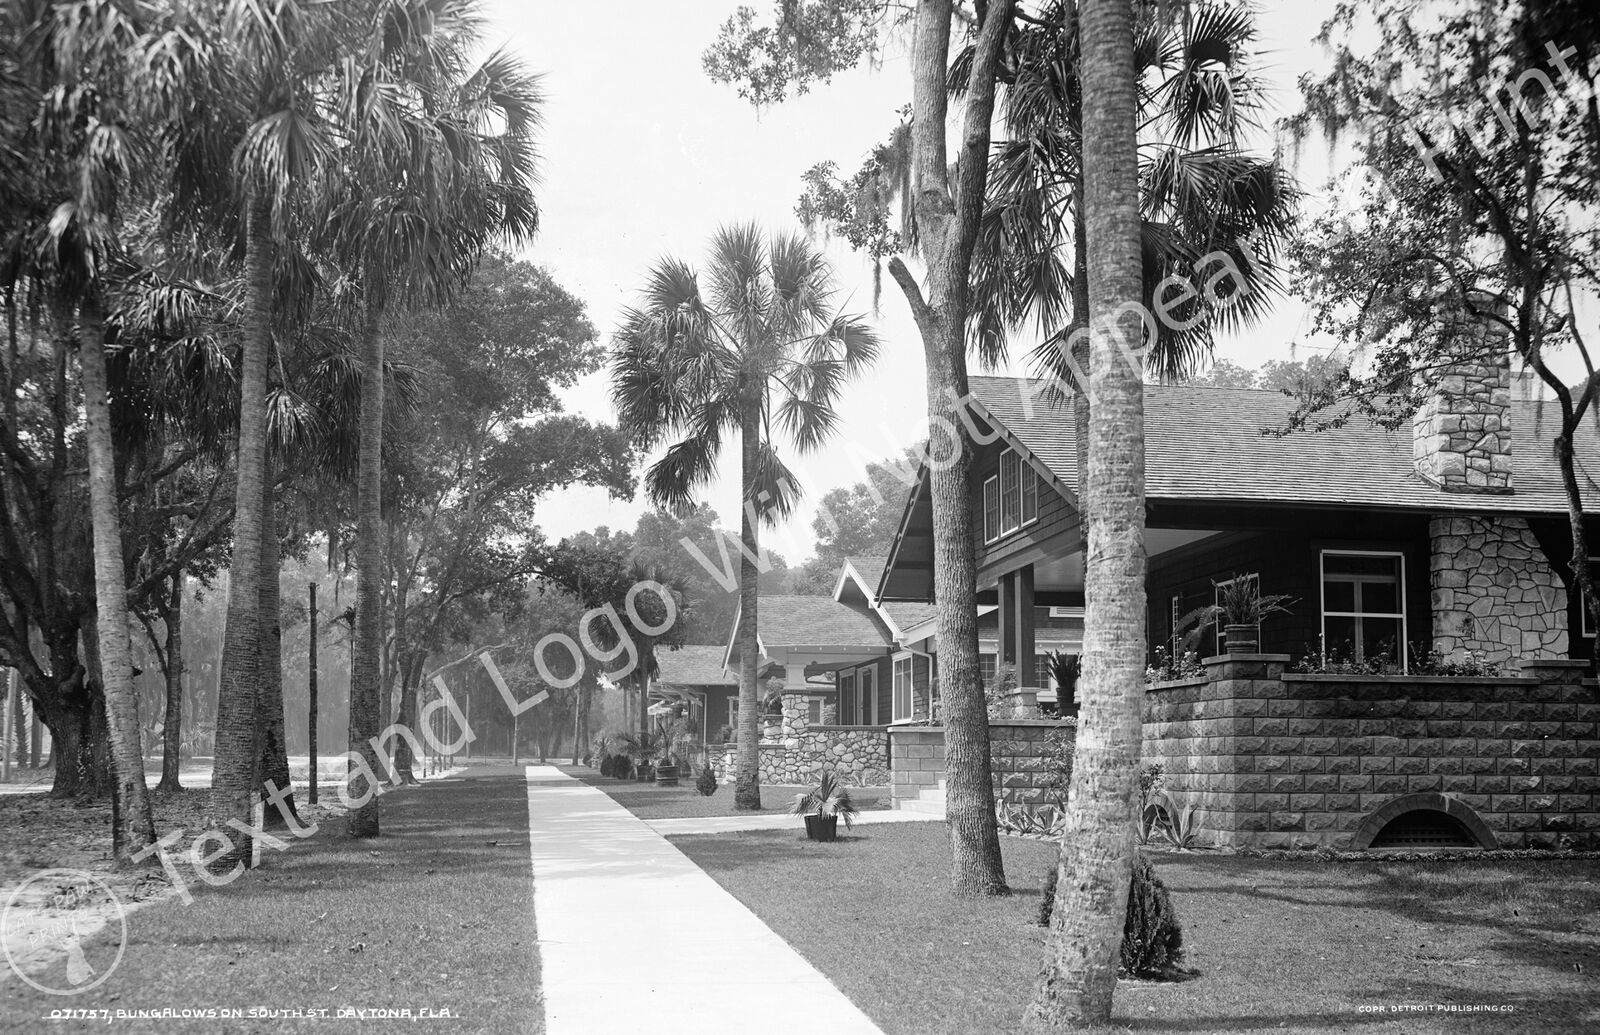 1915 Bungalows on South St, Daytona, Florida Old Photo 11\